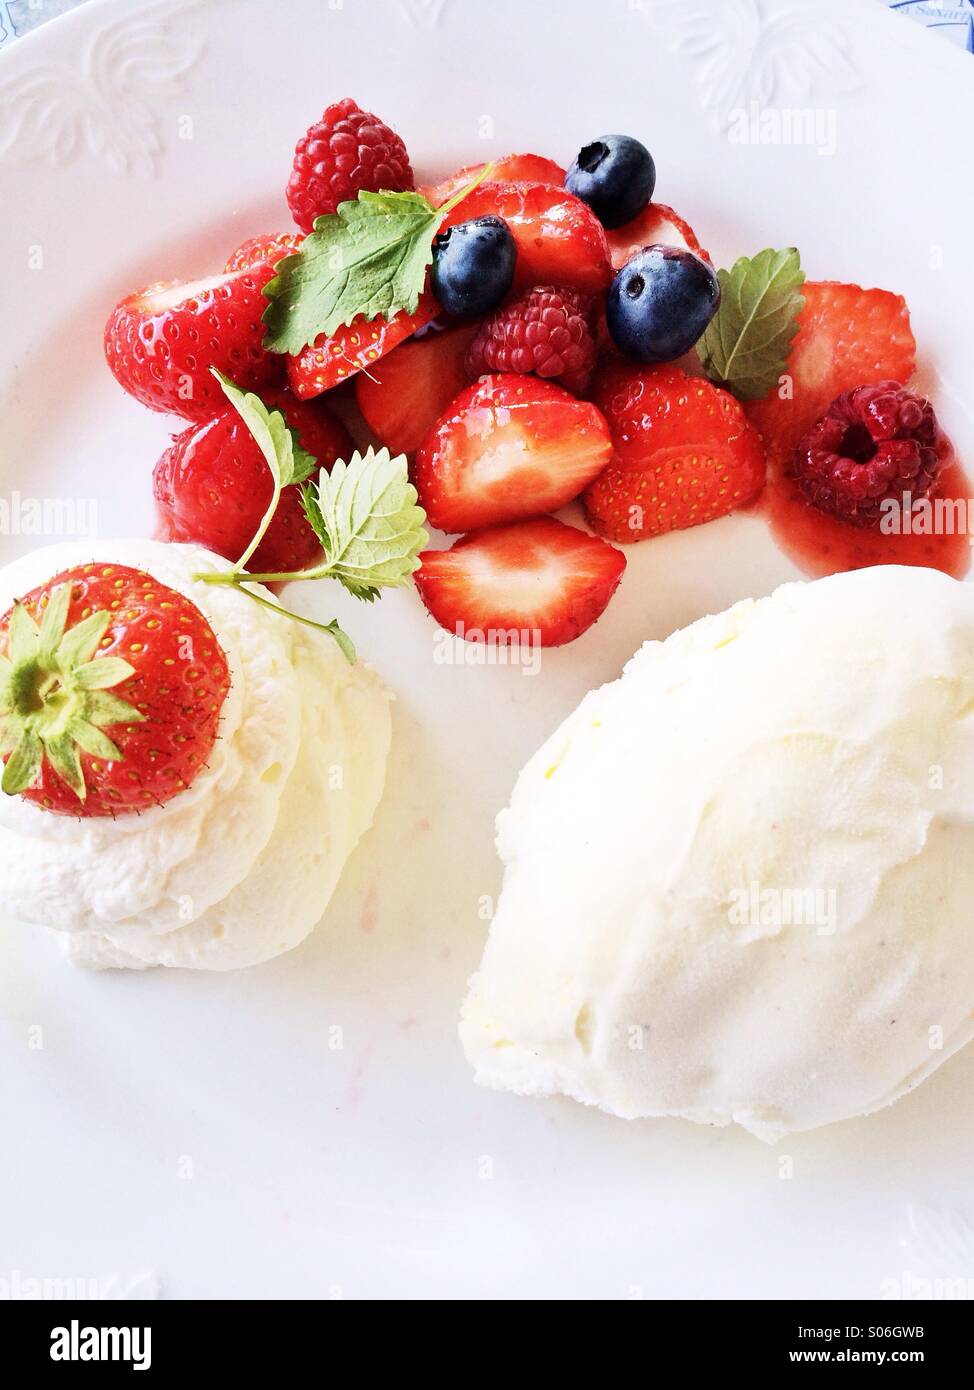 Strawberries with ice cream Stock Photo